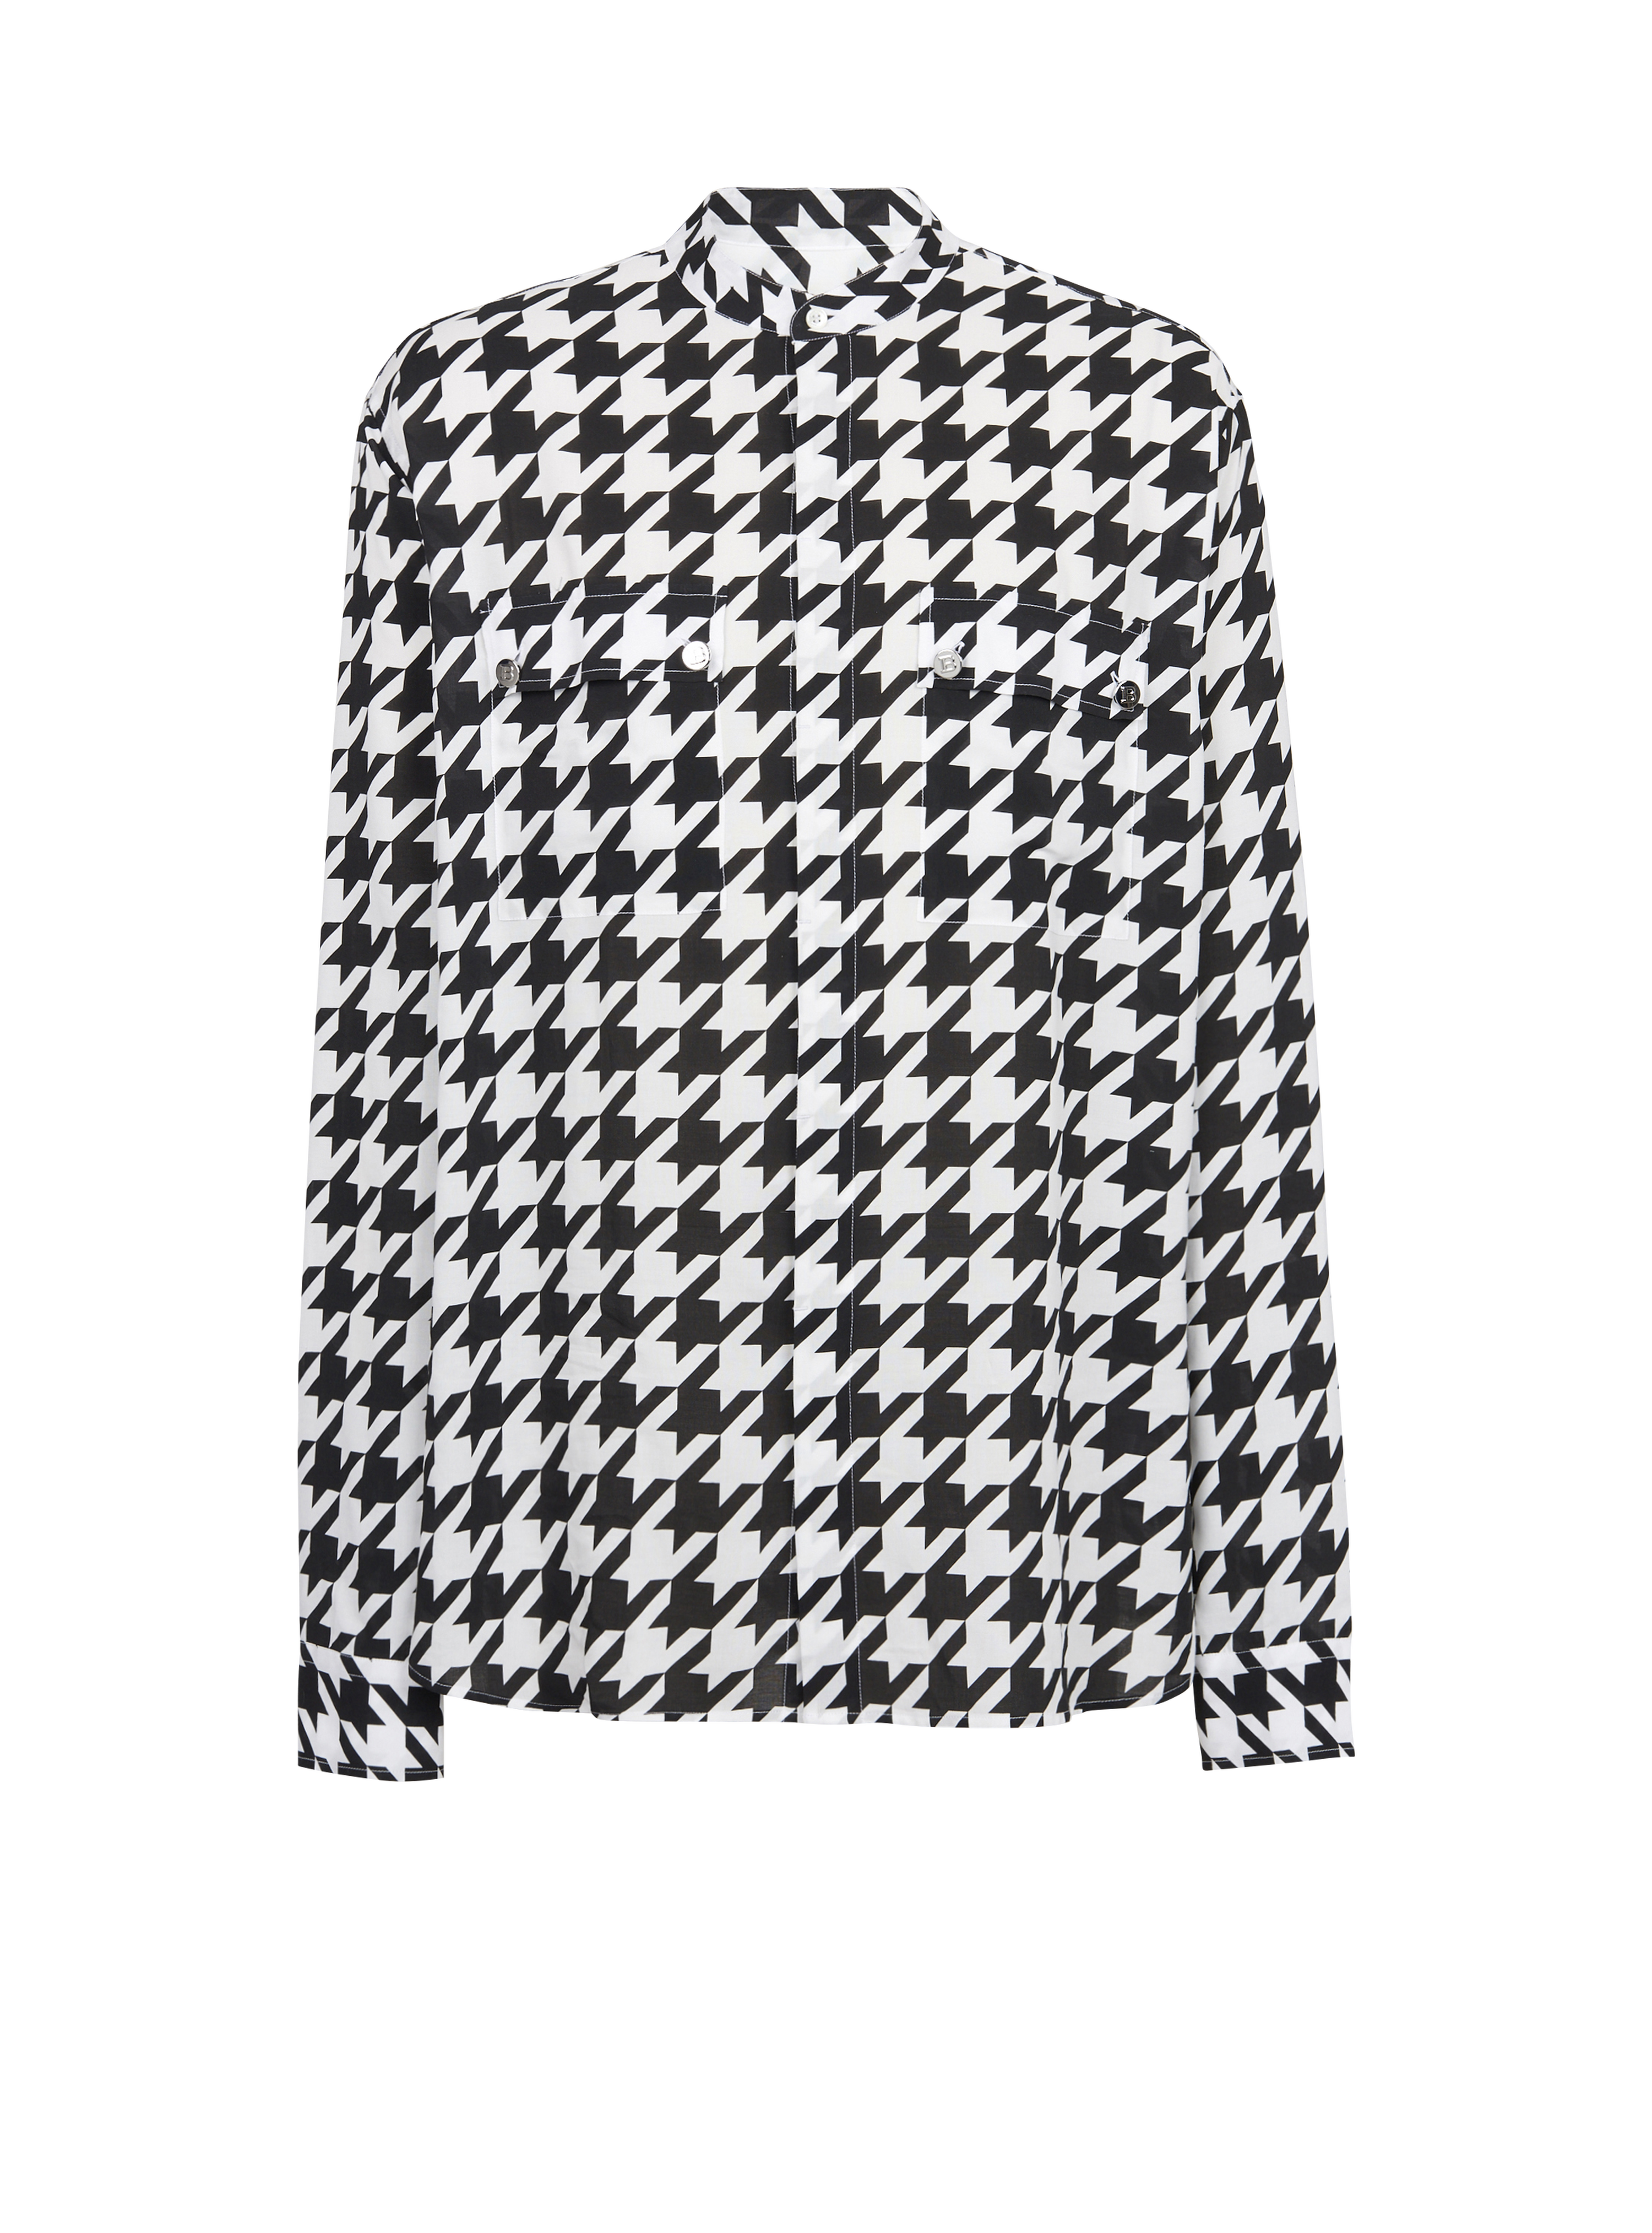 Baumwollhemd mit Hahnentrittmuster, schwarz